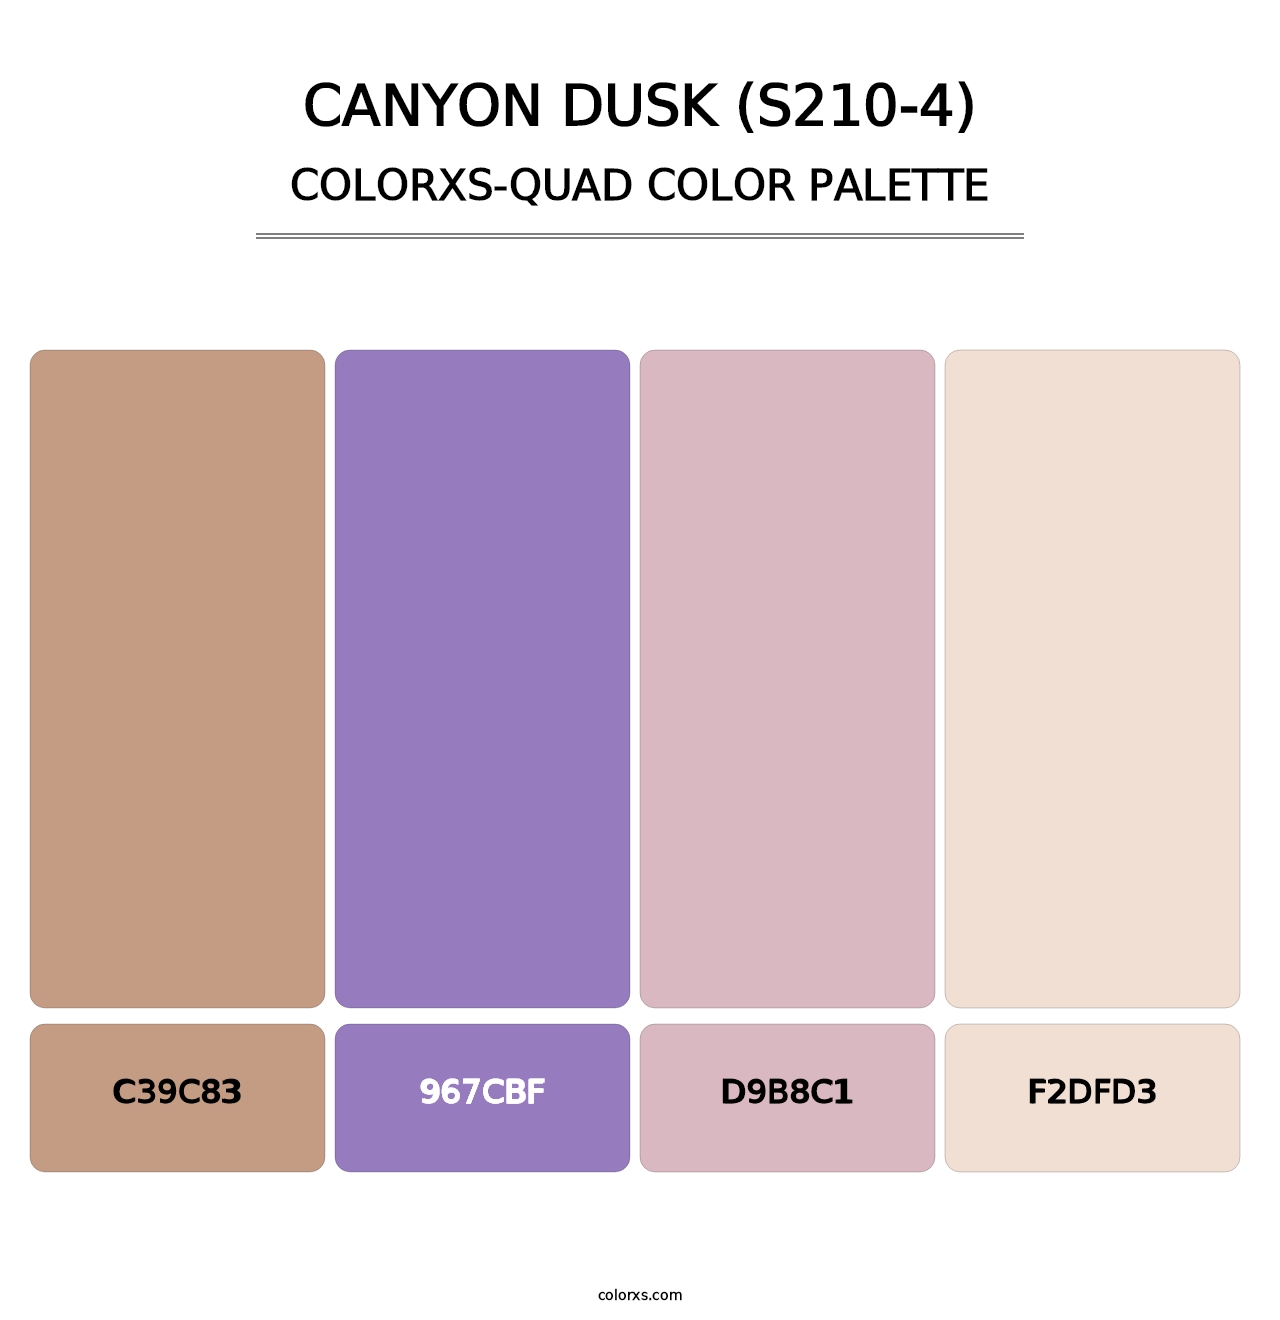 Canyon Dusk (S210-4) - Colorxs Quad Palette